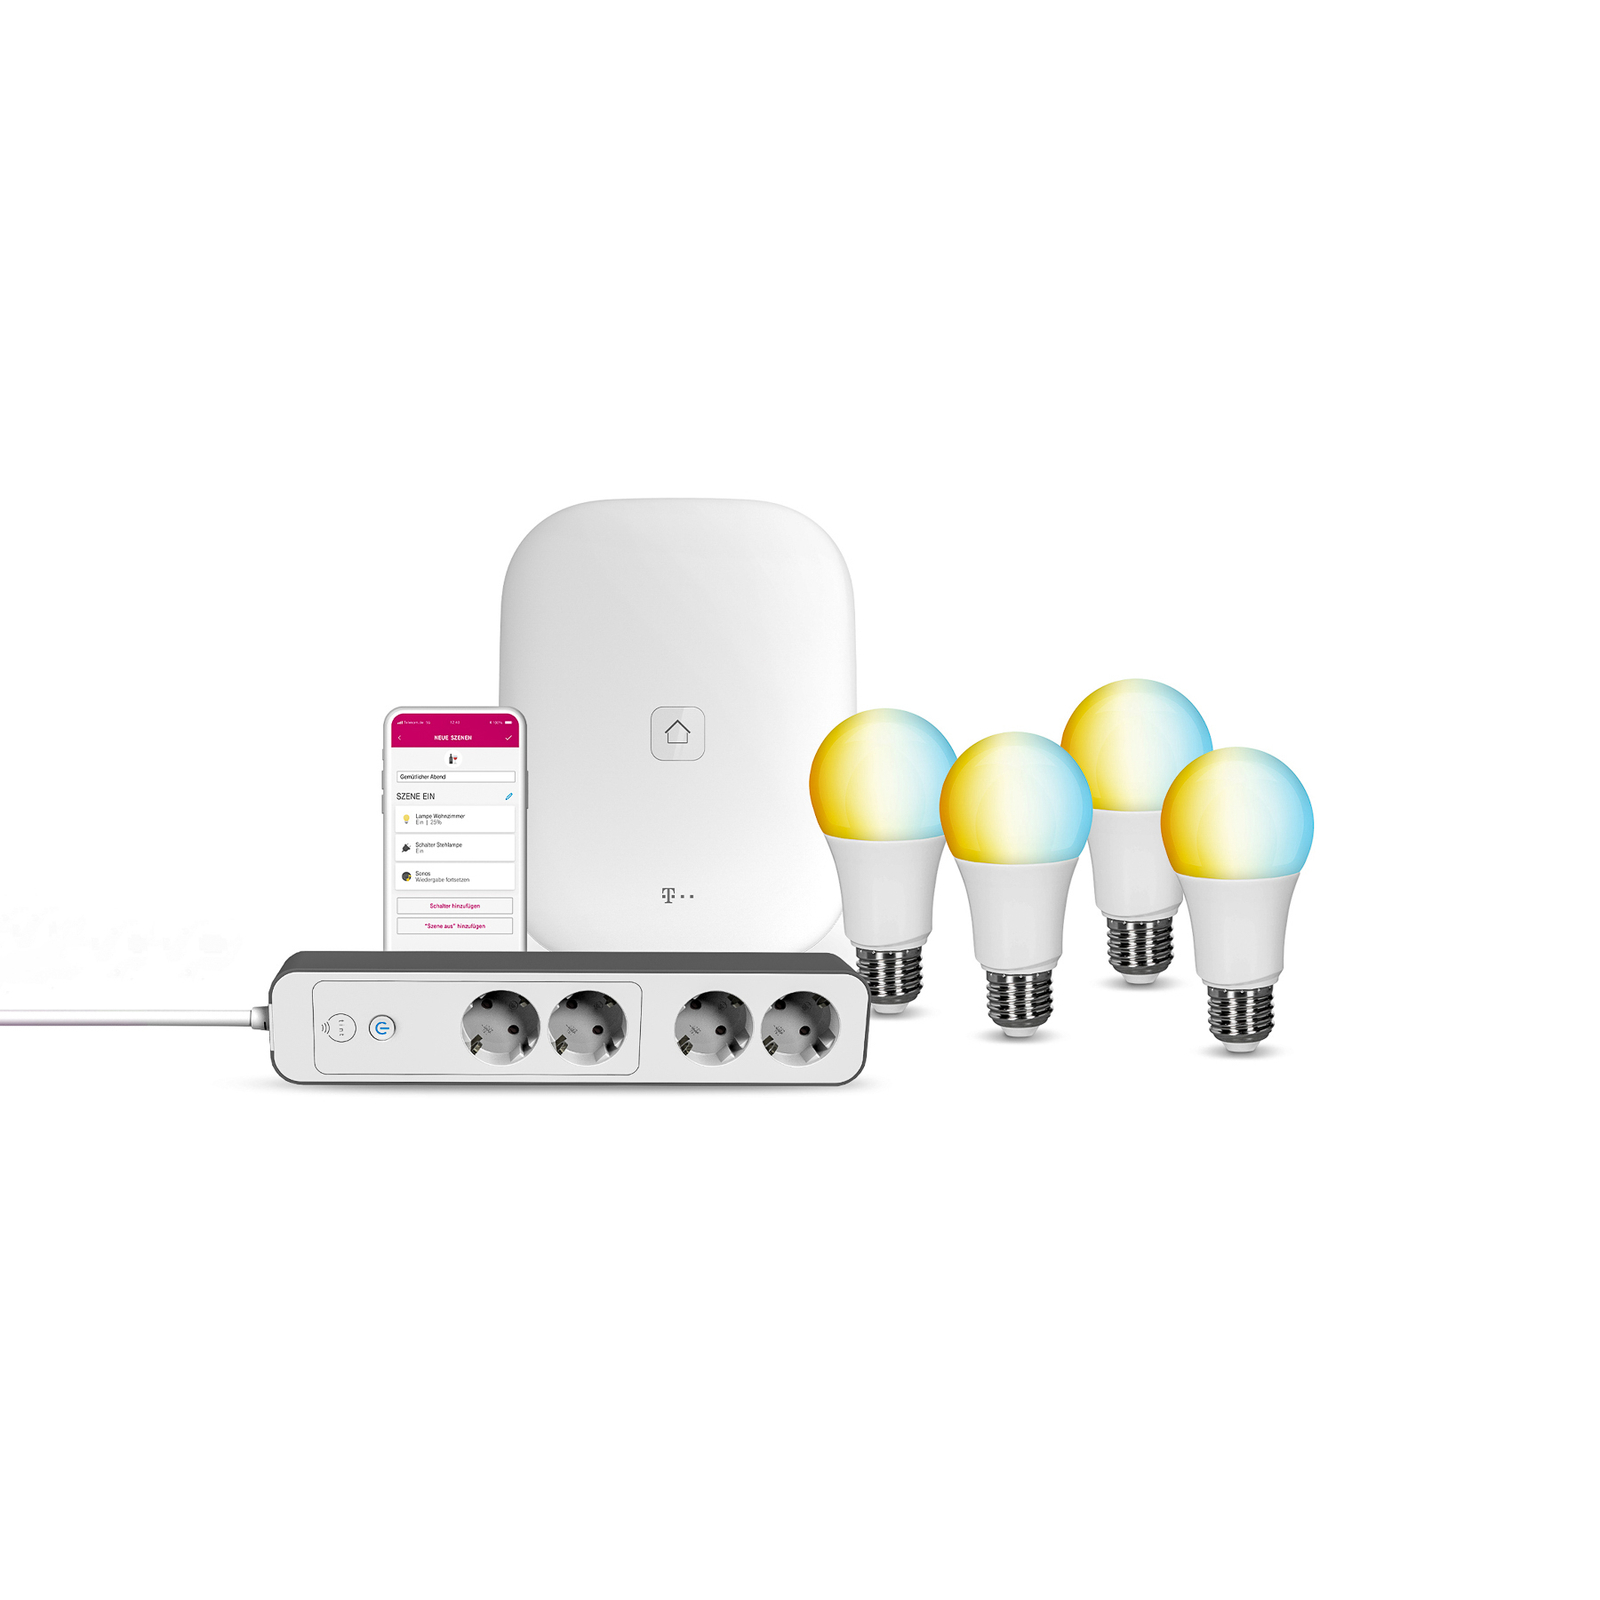 Müller Licht tint/Magenta LED SH starter kit M